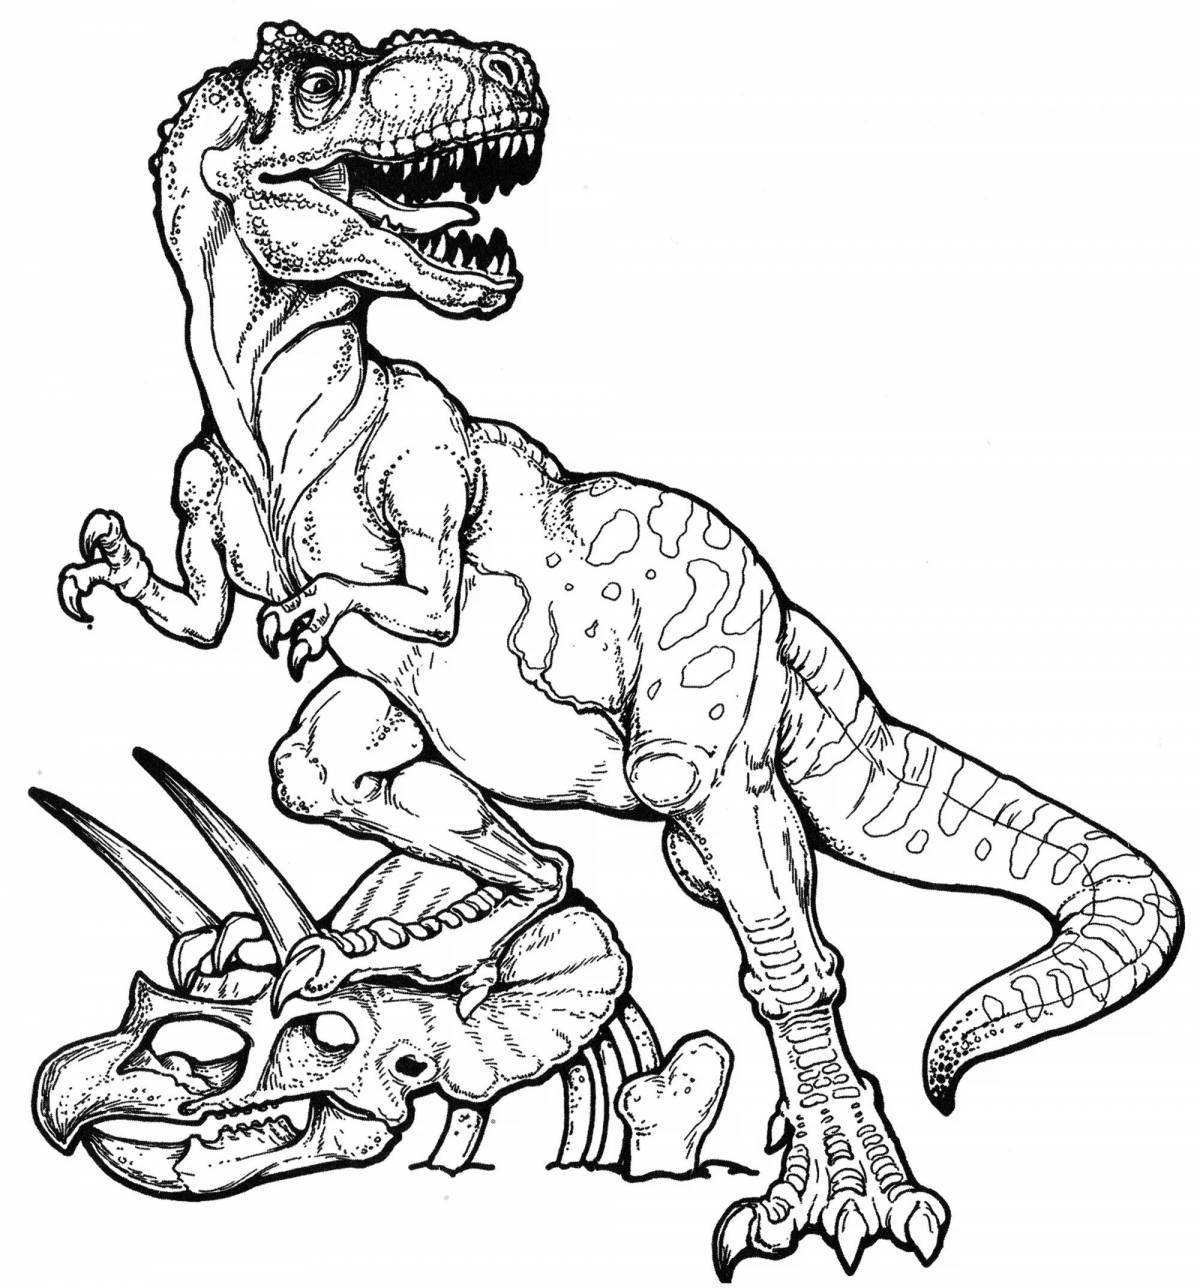 Яркая иллюстрация битвы динозавров